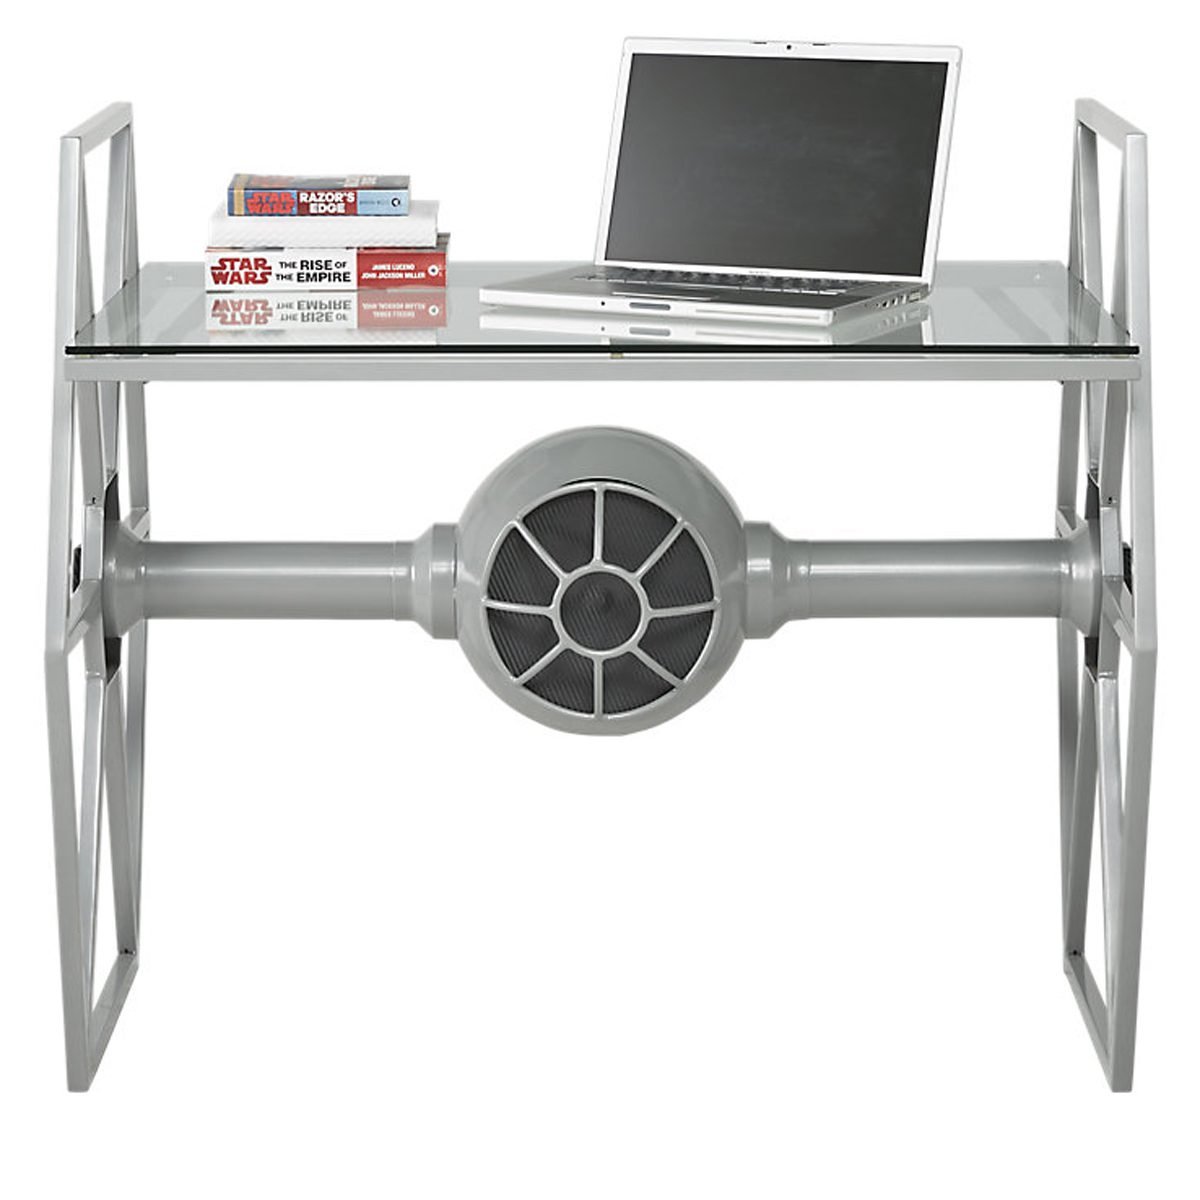 star wars desk accessories